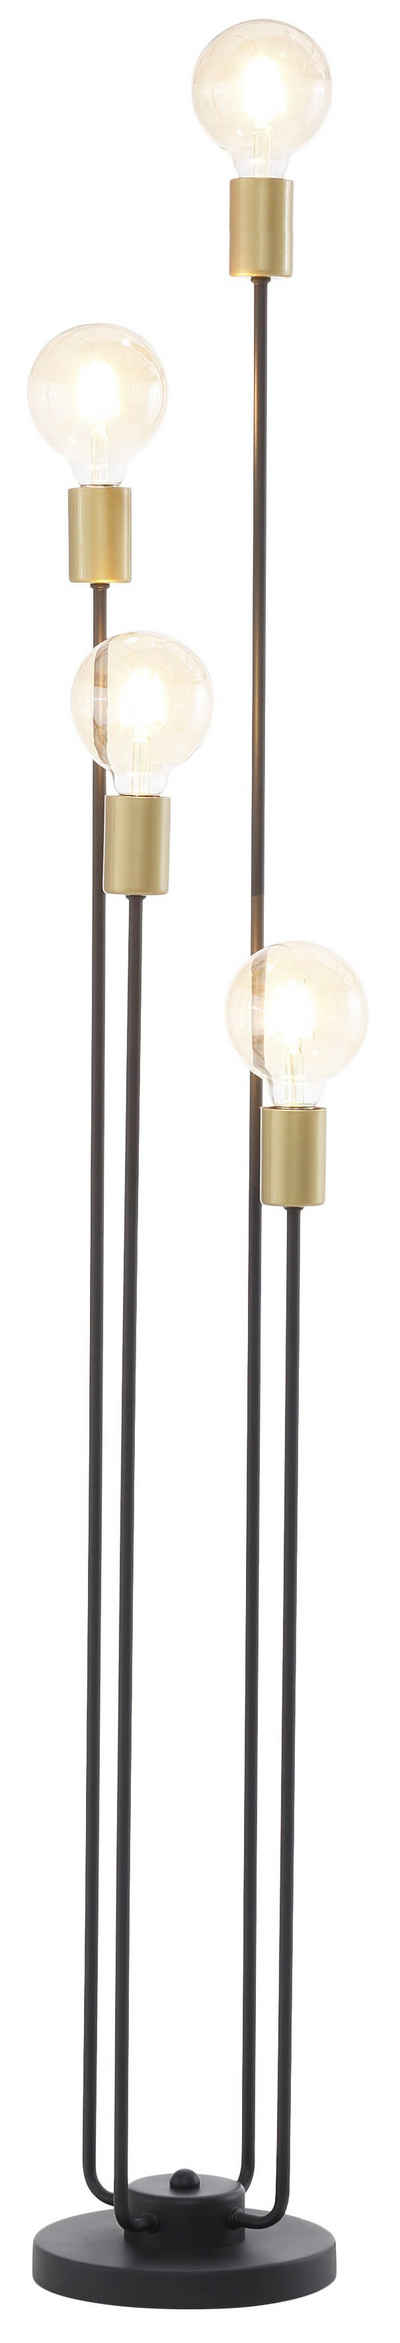 Leonique Stehlampe »Jarla«, Stehleuchte mit goldfarbenen Fassungen, Höhe 137 cm